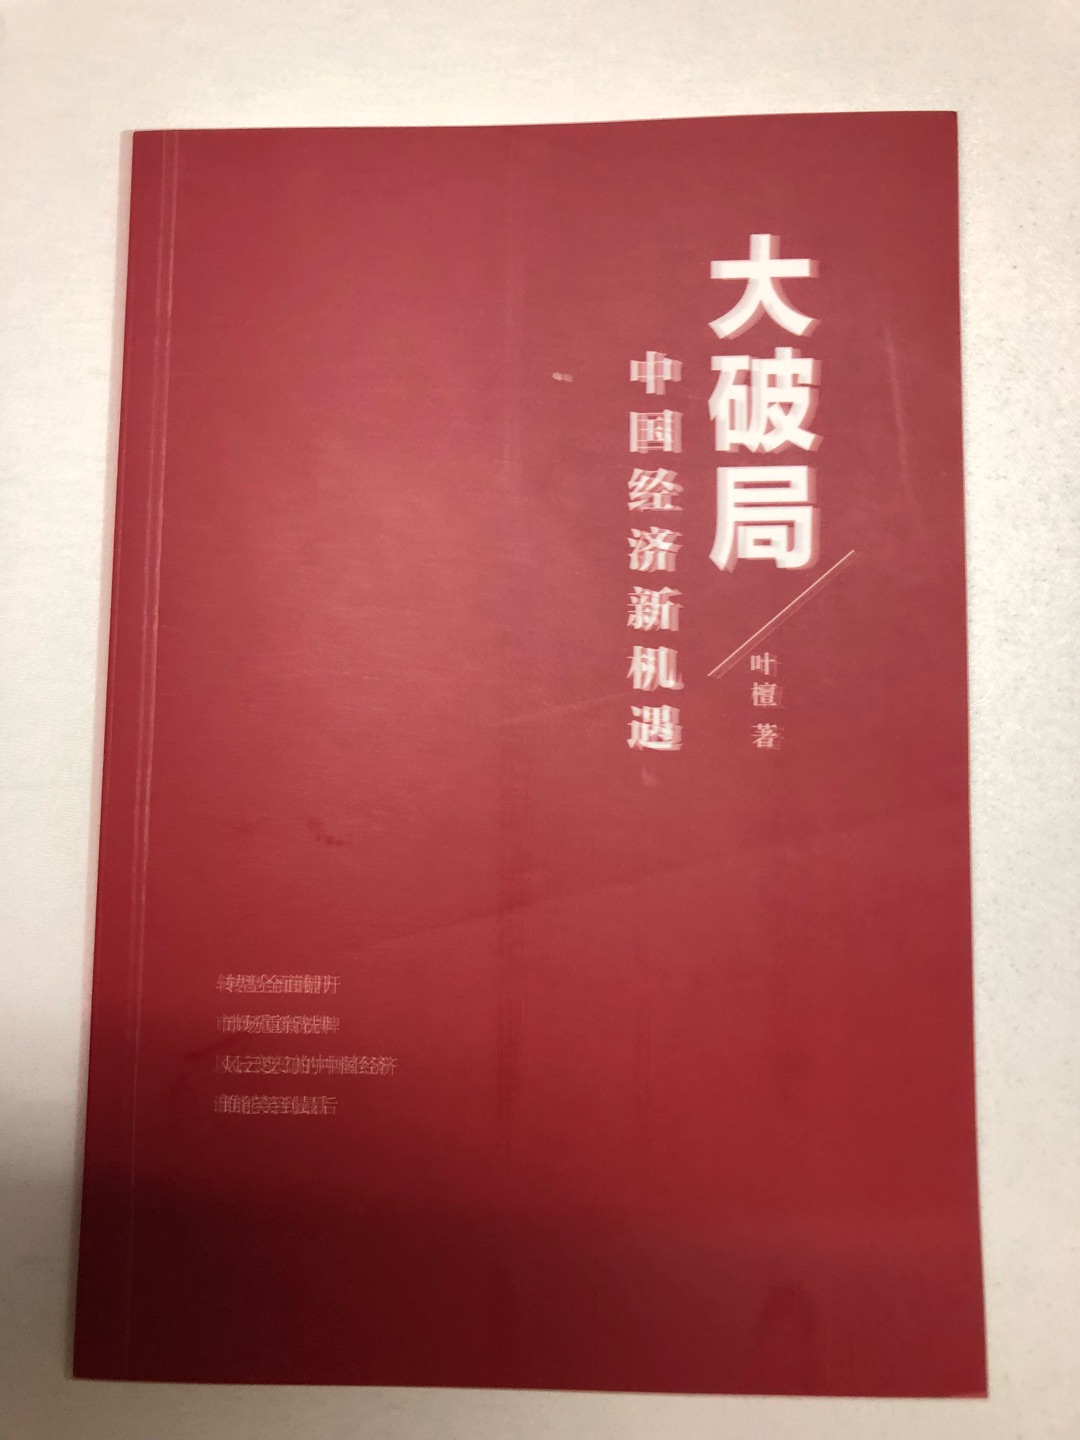 叶檀是当今知名的经济学者，这本书是她当今中国经济形势的分析，对经济的预测，从经济学角度告诉大家如何投资。